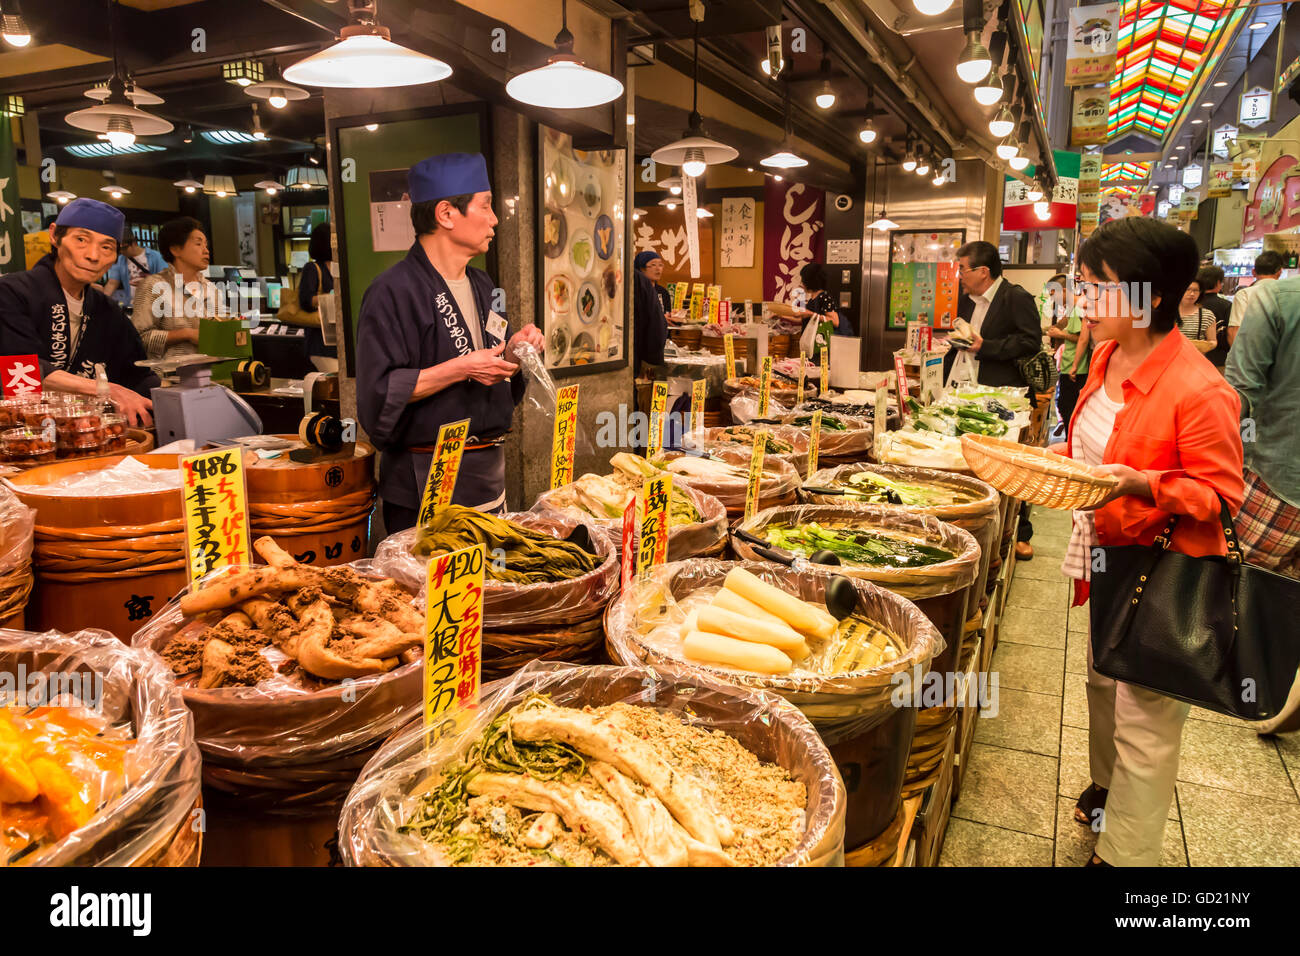 Avec panier d'achat de l'acheteur considère au niveau local food, Japonais Nishiki Market, le centre-ville de Kyoto, Japon, Asie Banque D'Images